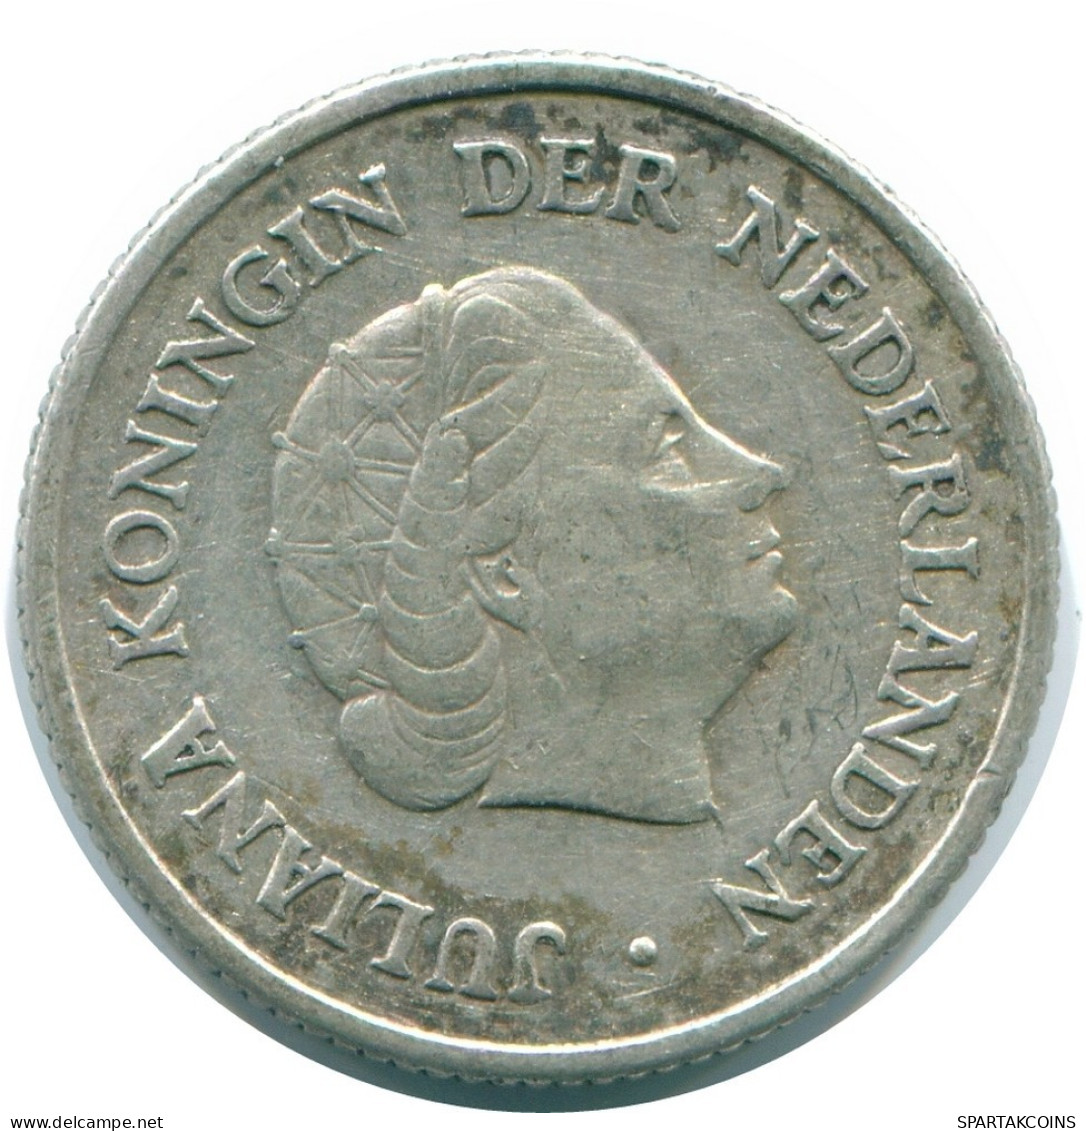 1/4 GULDEN 1960 NIEDERLÄNDISCHE ANTILLEN SILBER Koloniale Münze #NL11070.4.D.A - Antilles Néerlandaises